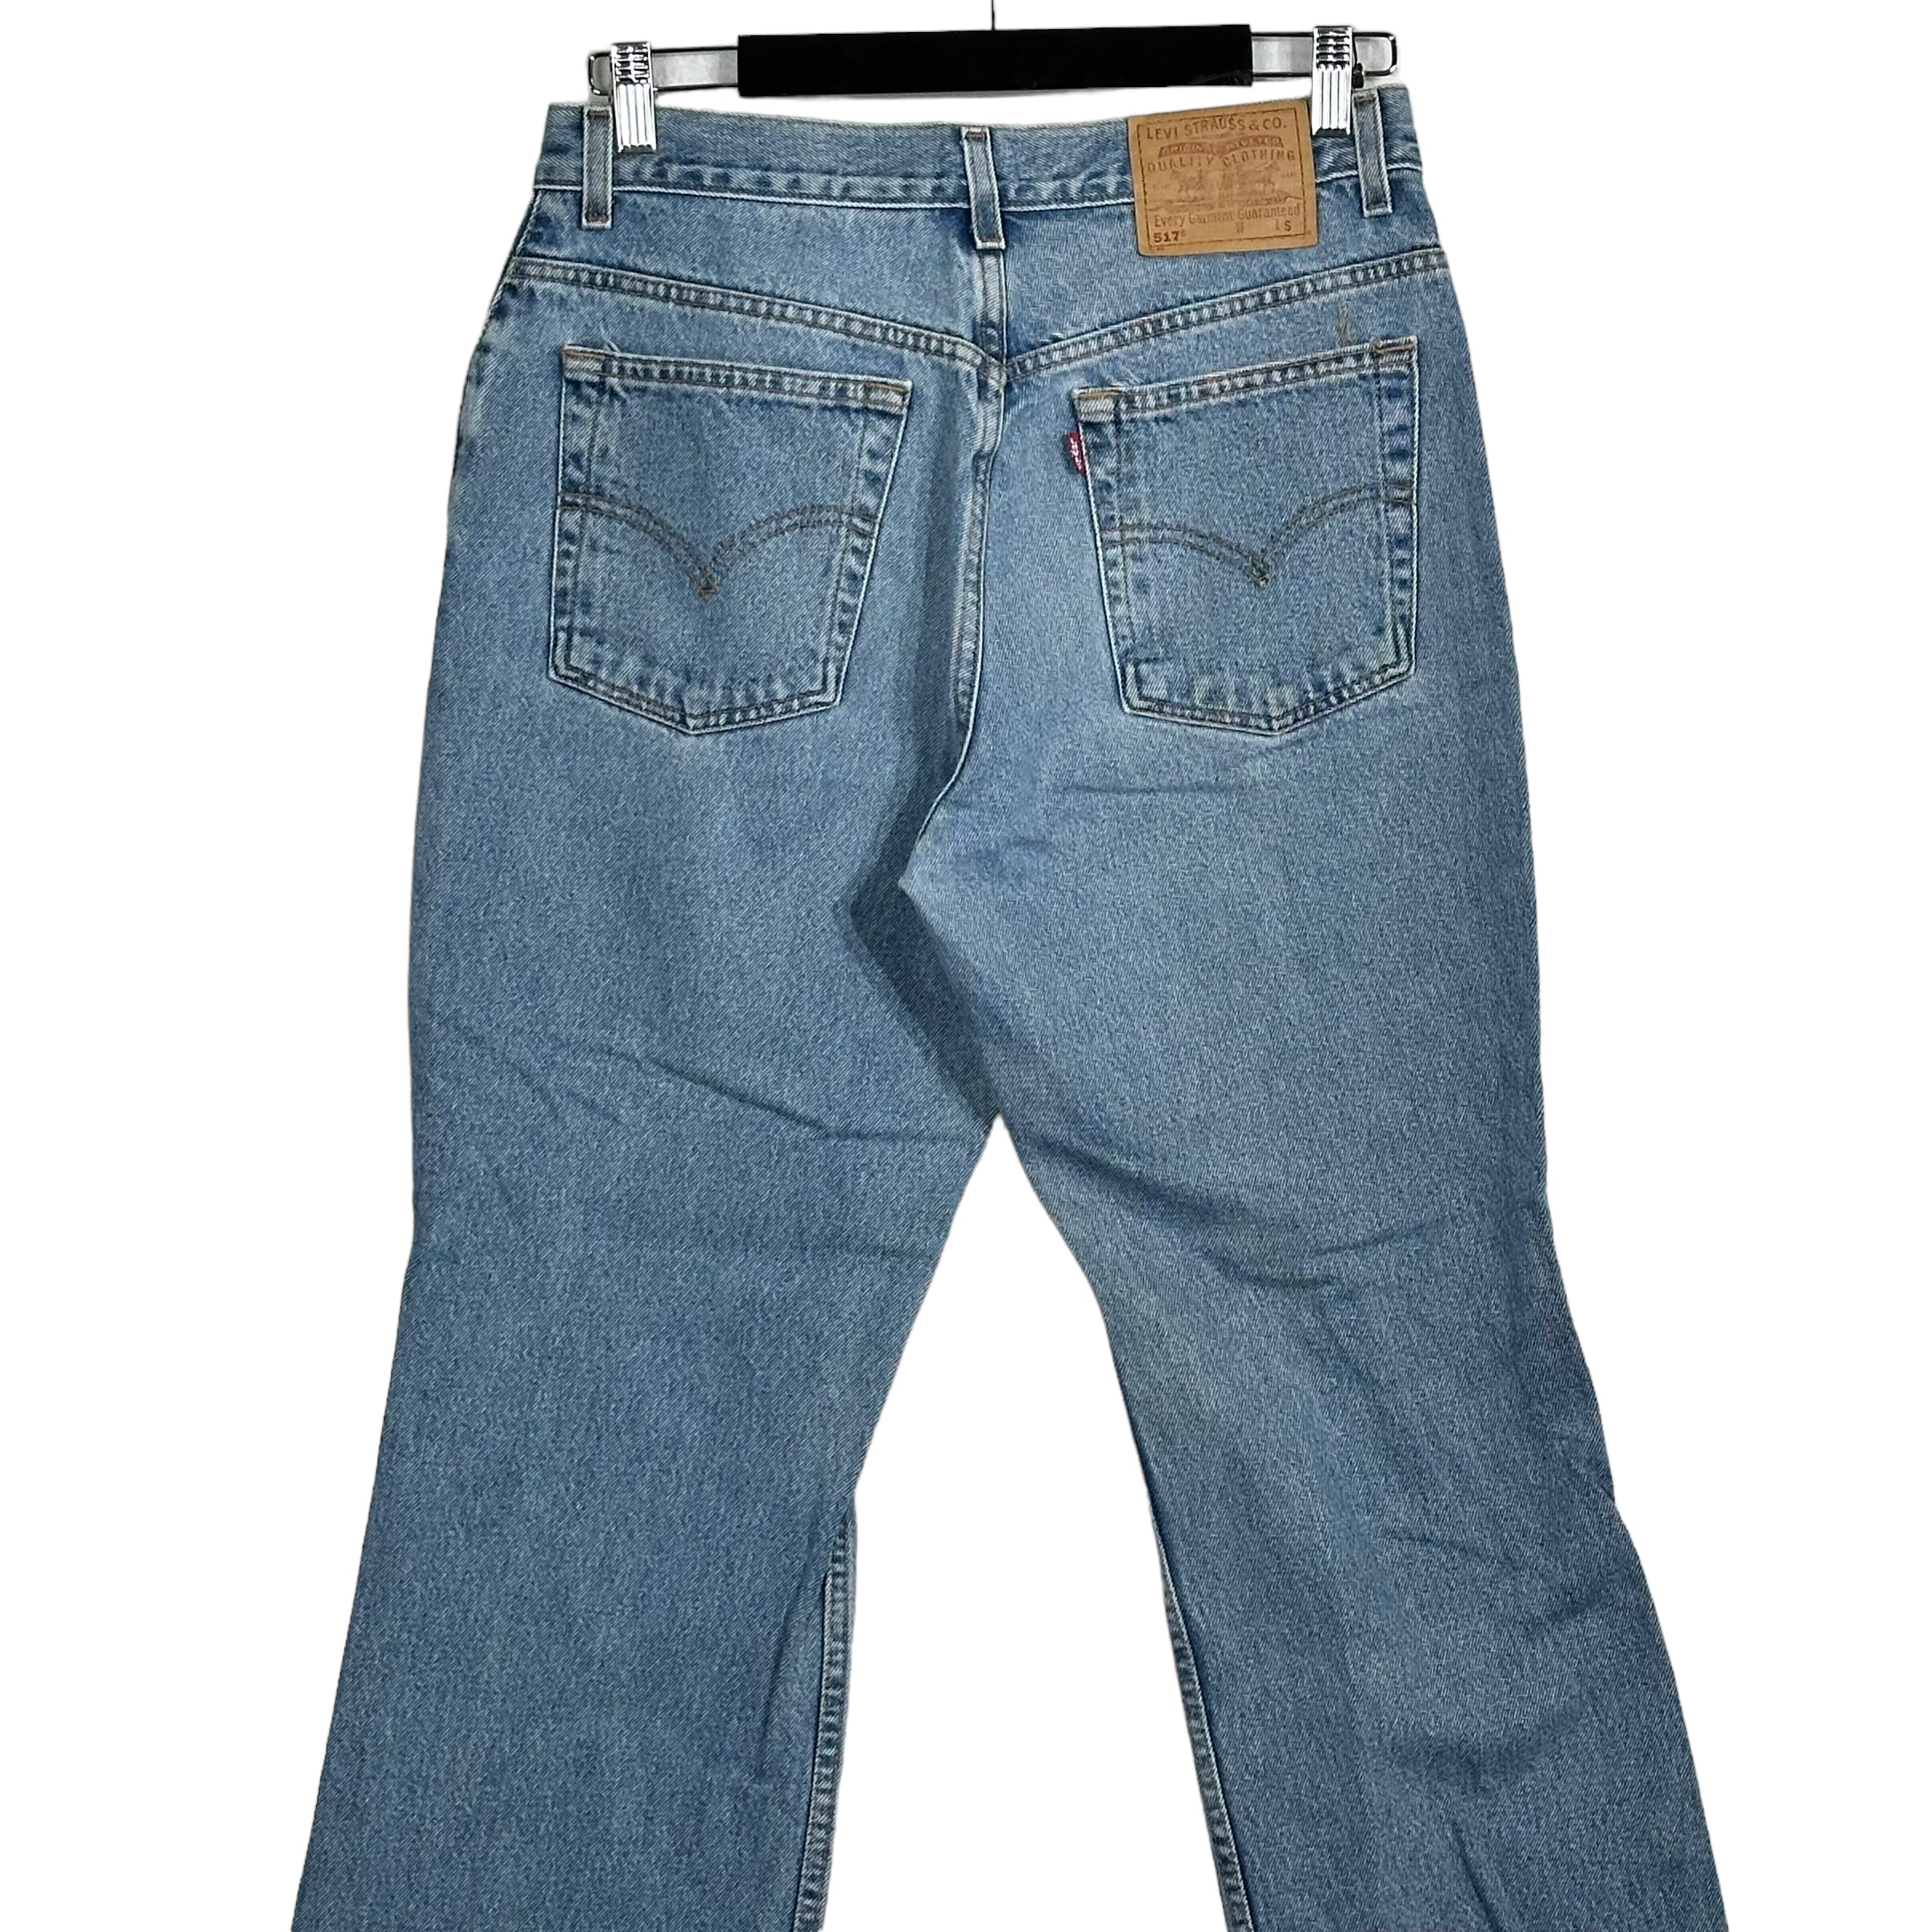 Vintage Levis 517 Boot Cut Low Rise Jeans